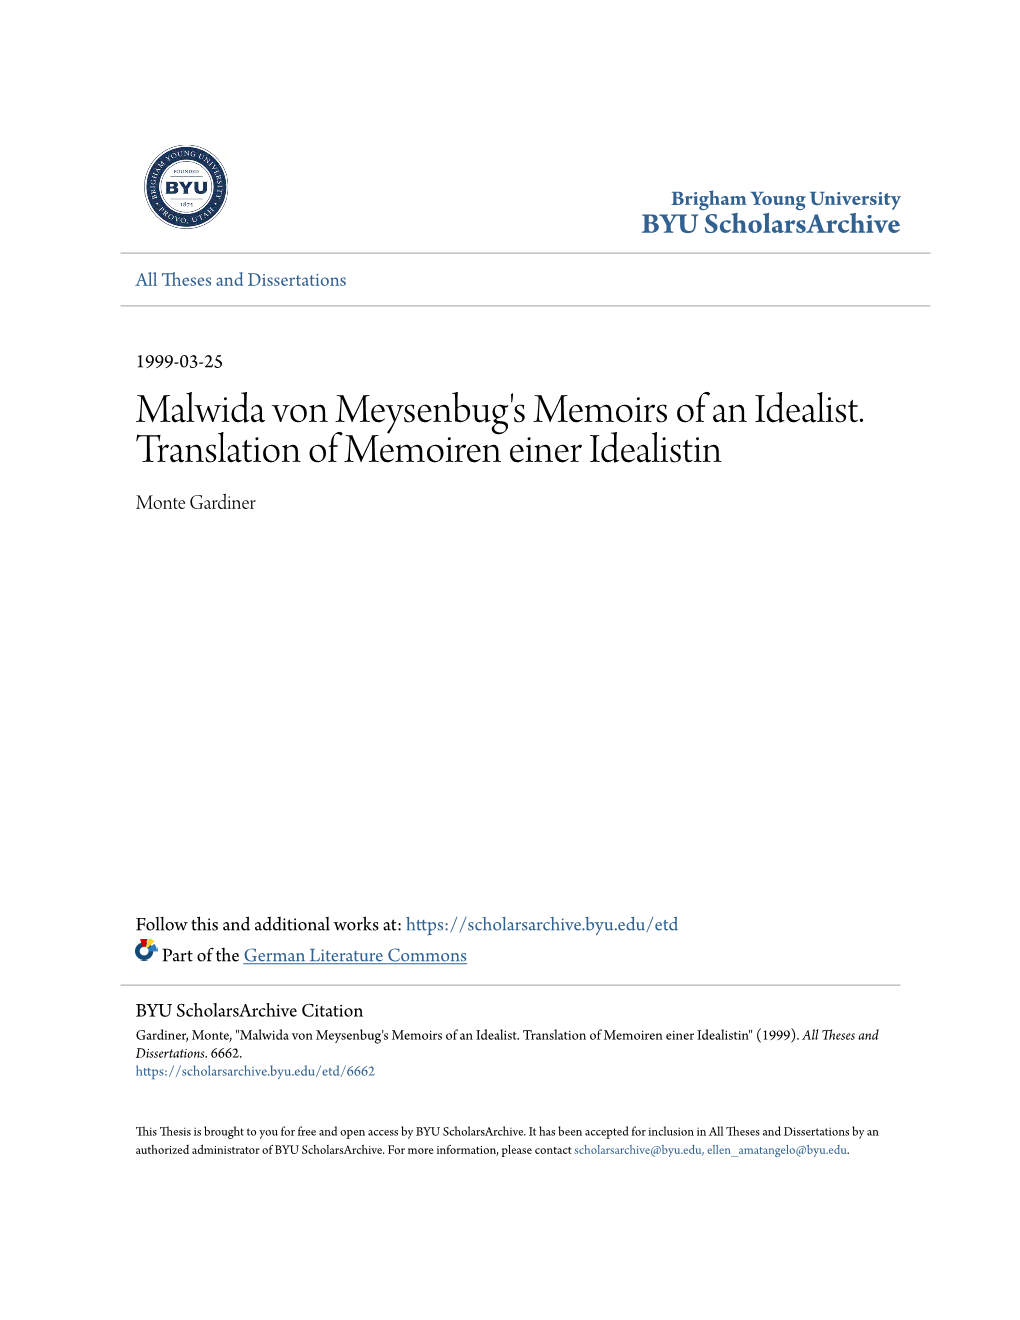 Malwida Von Meysenbug's Memoirs of an Idealist. Translation of Memoiren Einer Idealistin Monte Gardiner